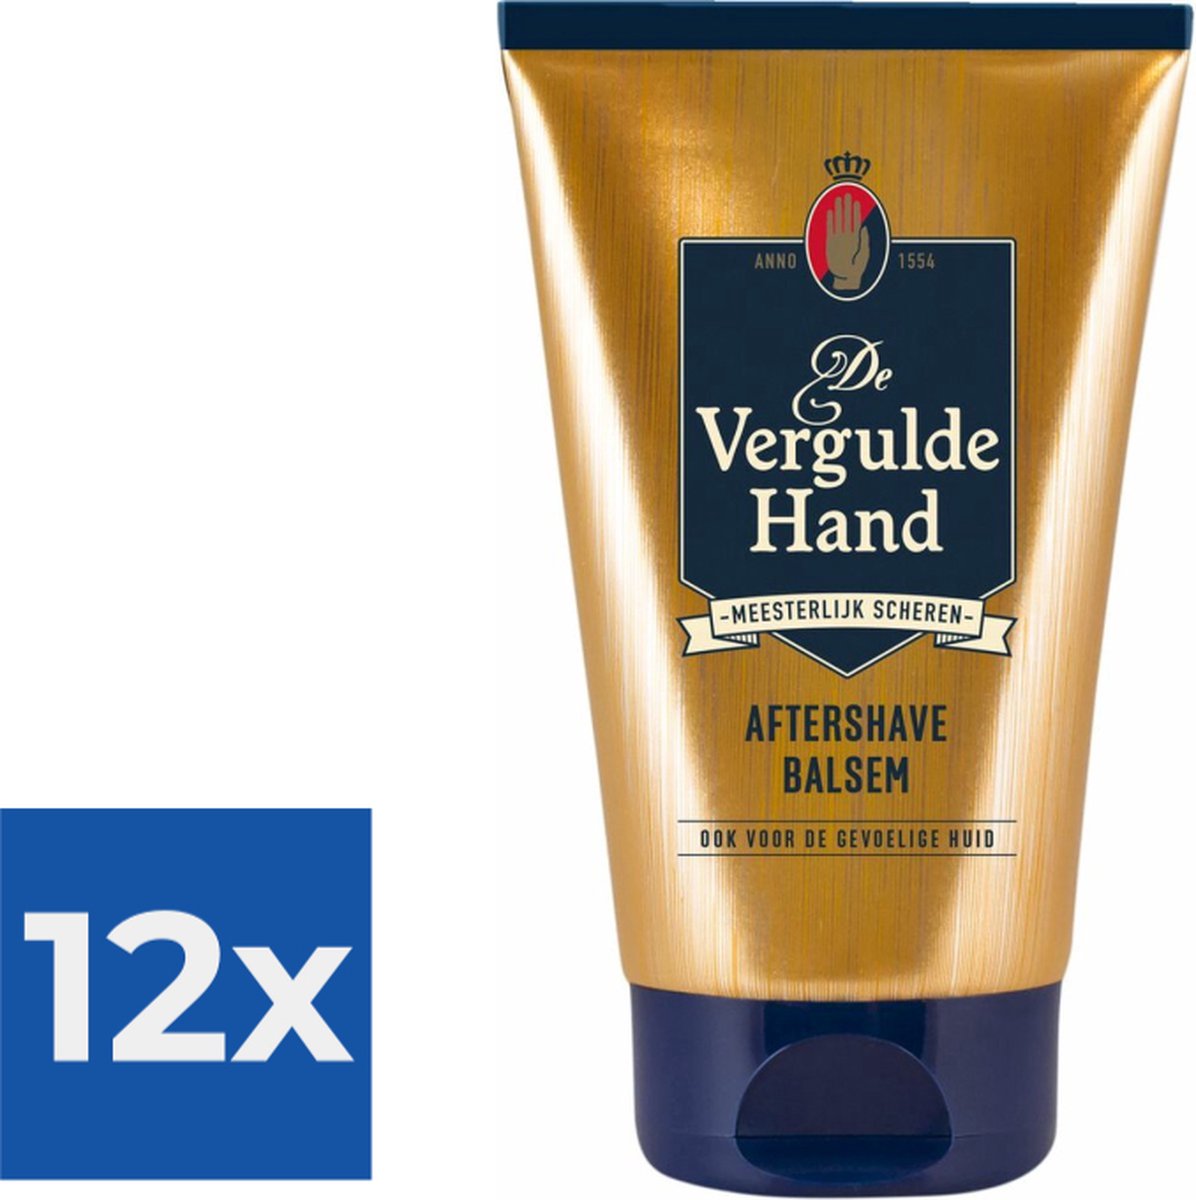 Vergulde Hand Aftershave Balsem 100 ml - Voordeelverpakking 12 stuks